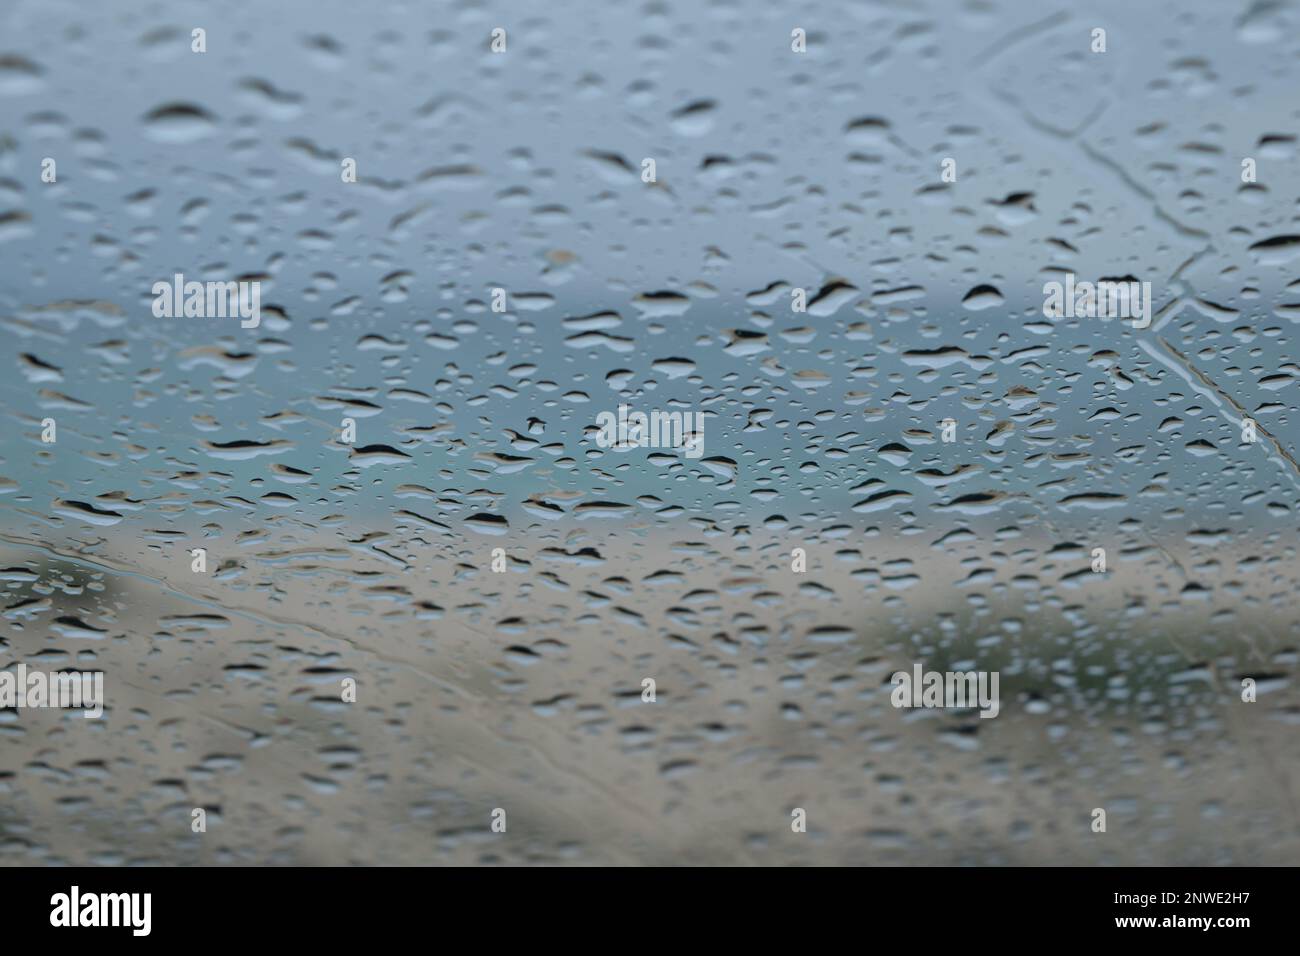 Gouttes de pluie sur le pare-brise d'une voiture, plage et mer en arrière-plan Stock Photo